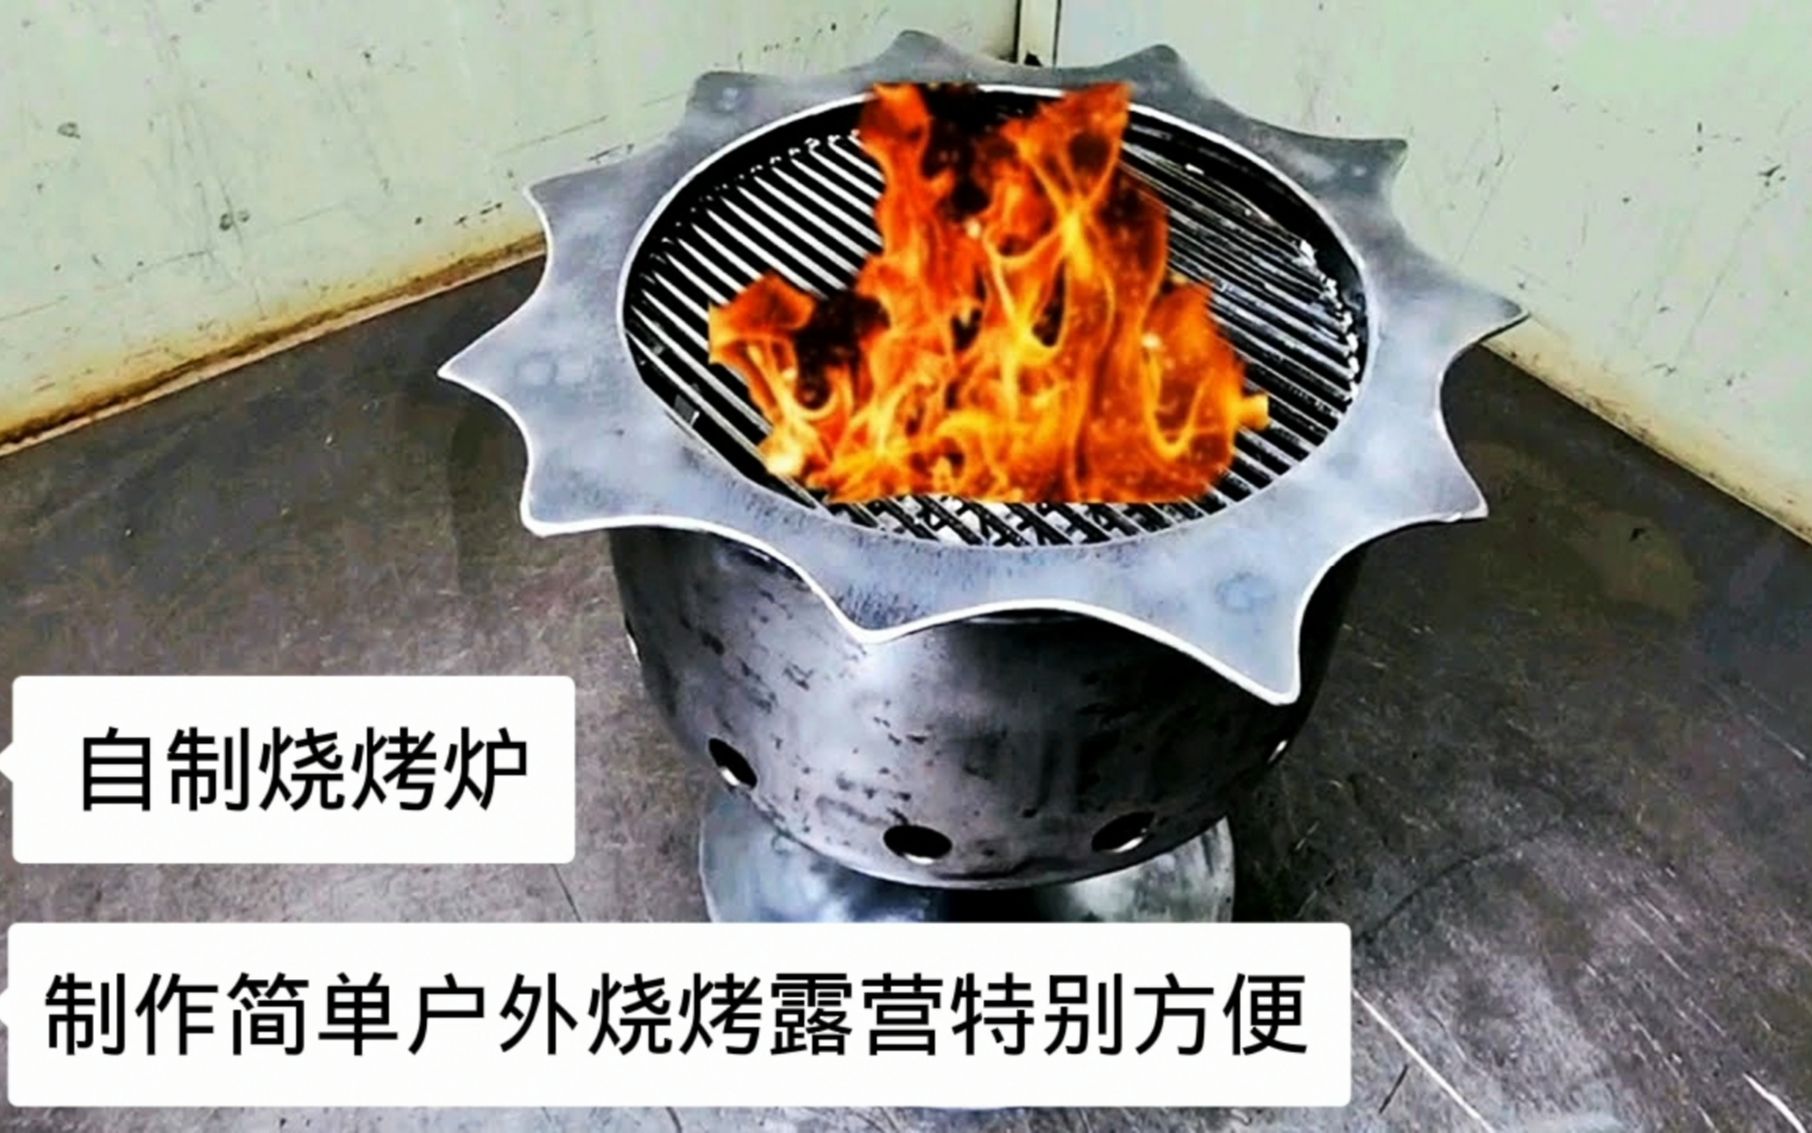 自制高脚杯烧烤炉，用报废的氟瓶就能制作，户外烧烤必备神器